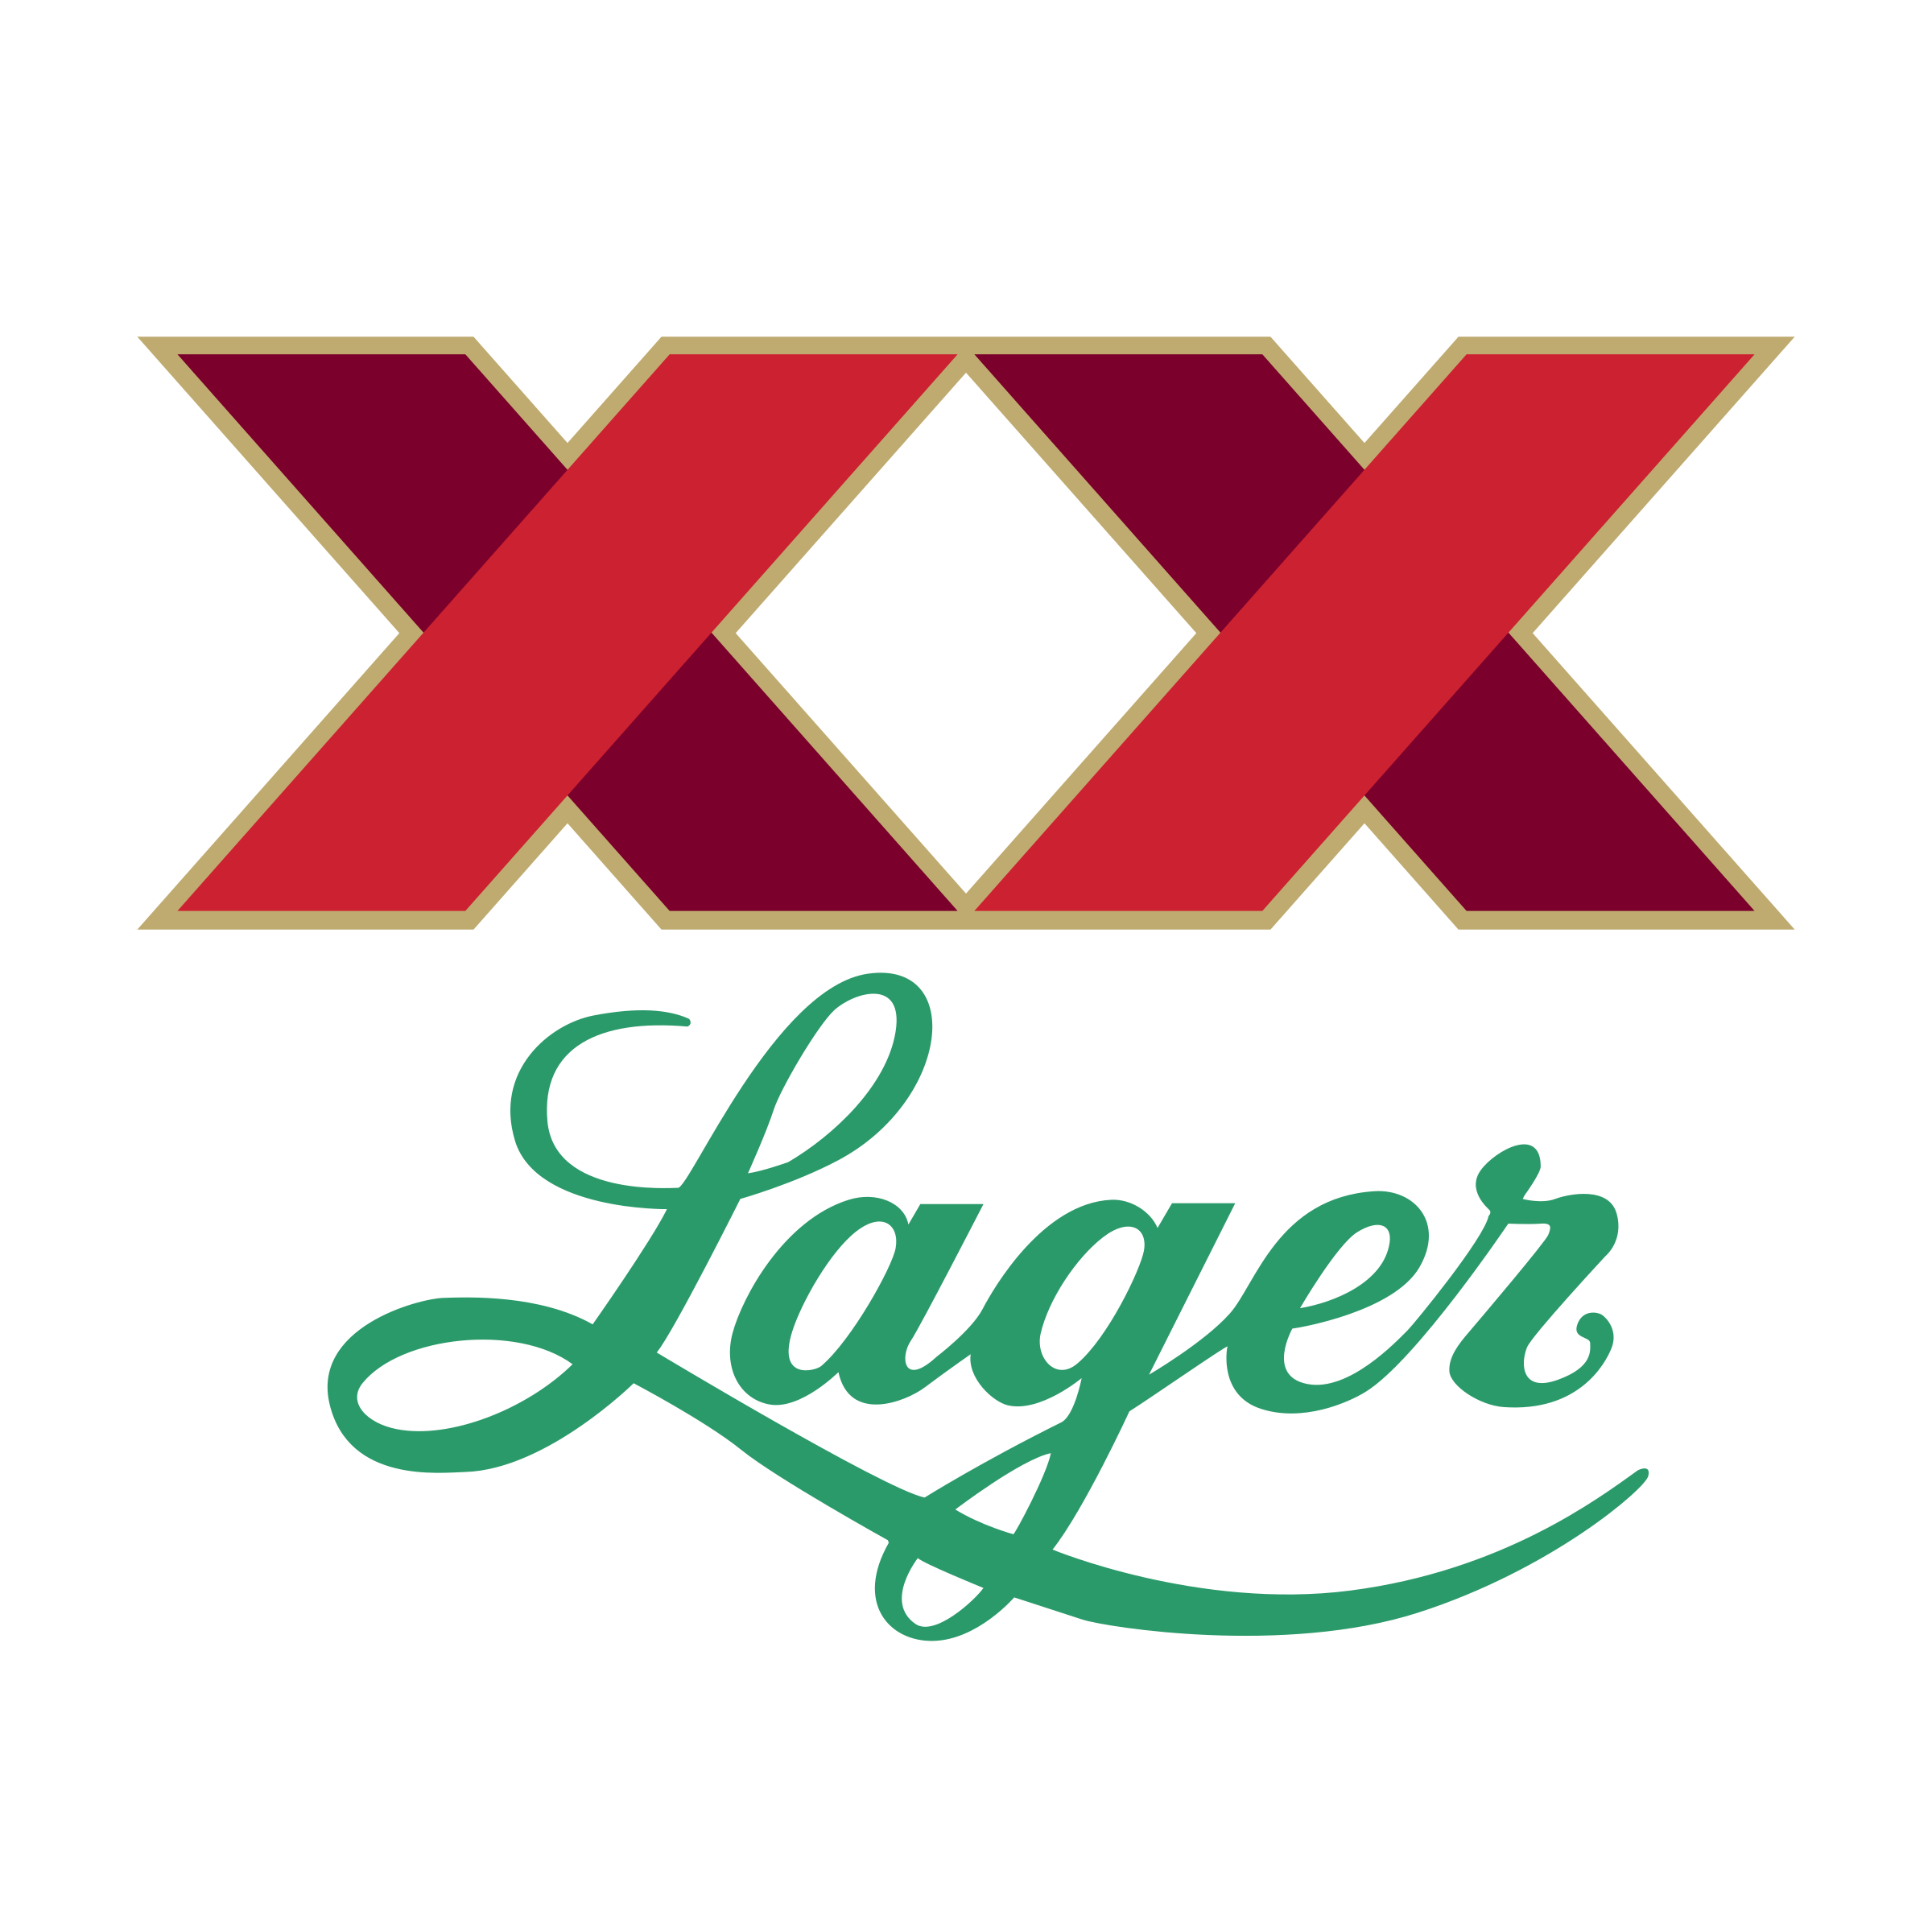 Lager Logo - XX Lager Logo PNG Transparent & SVG Vector